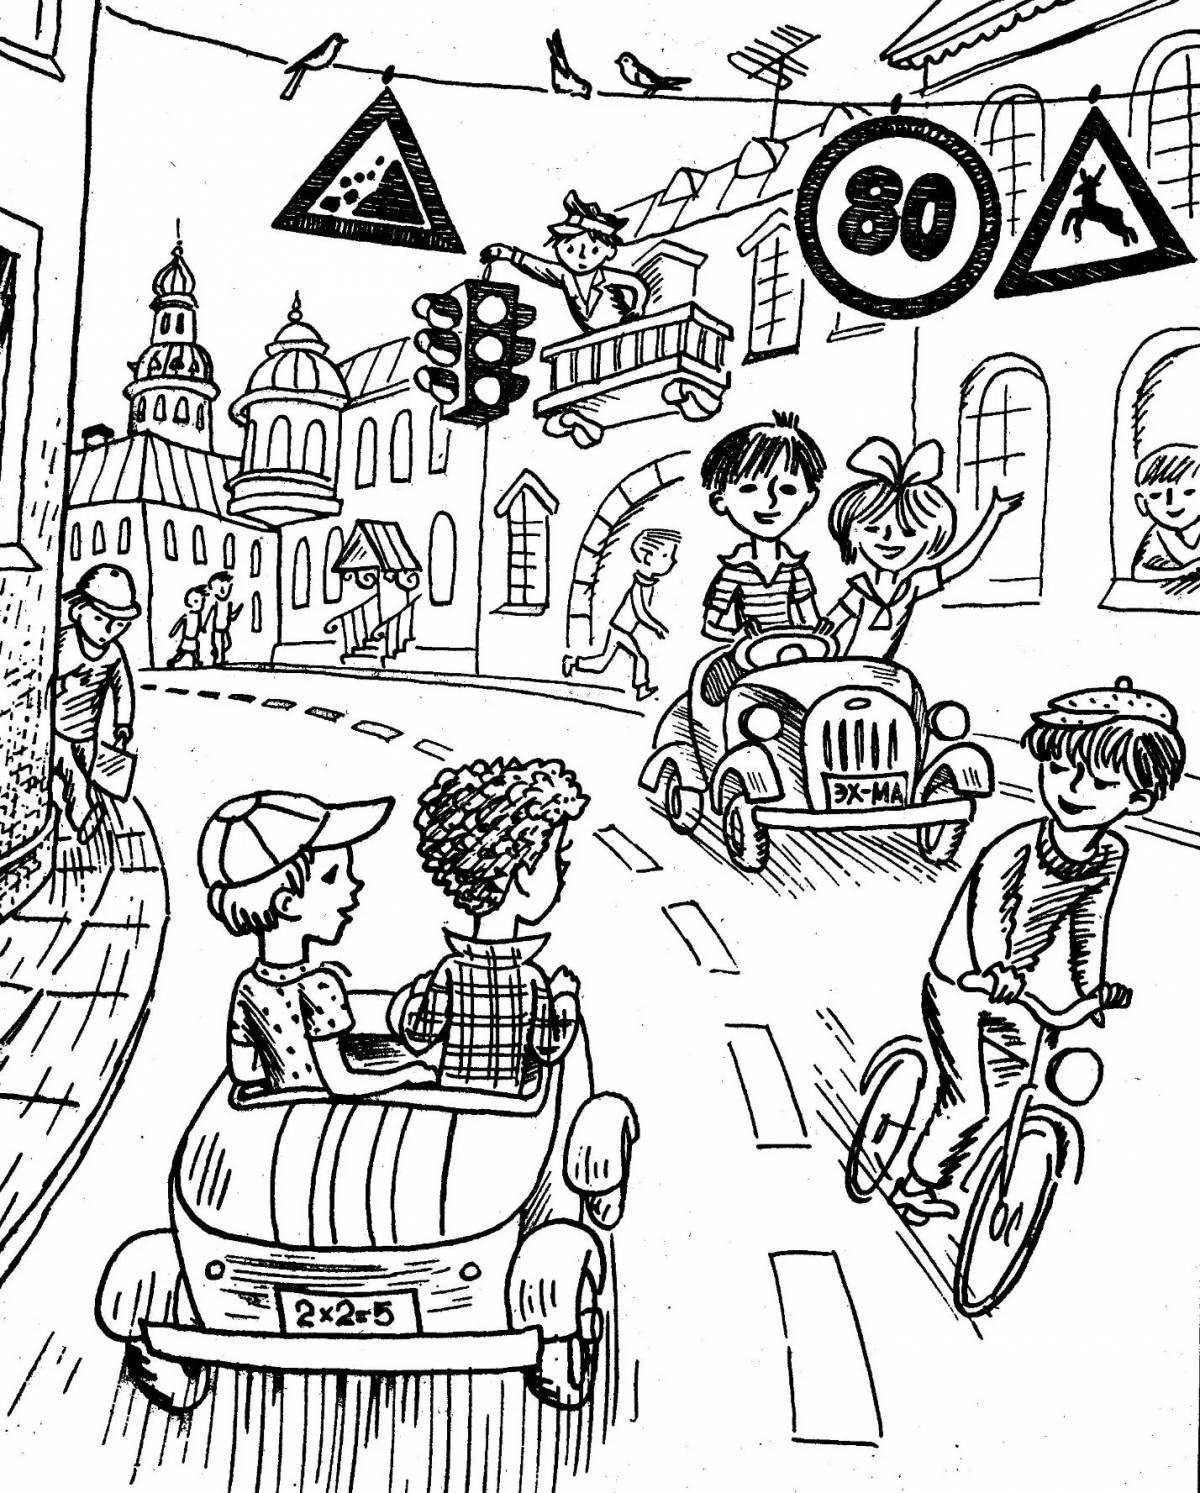 Развлекательный плакат о правилах дорожного движения